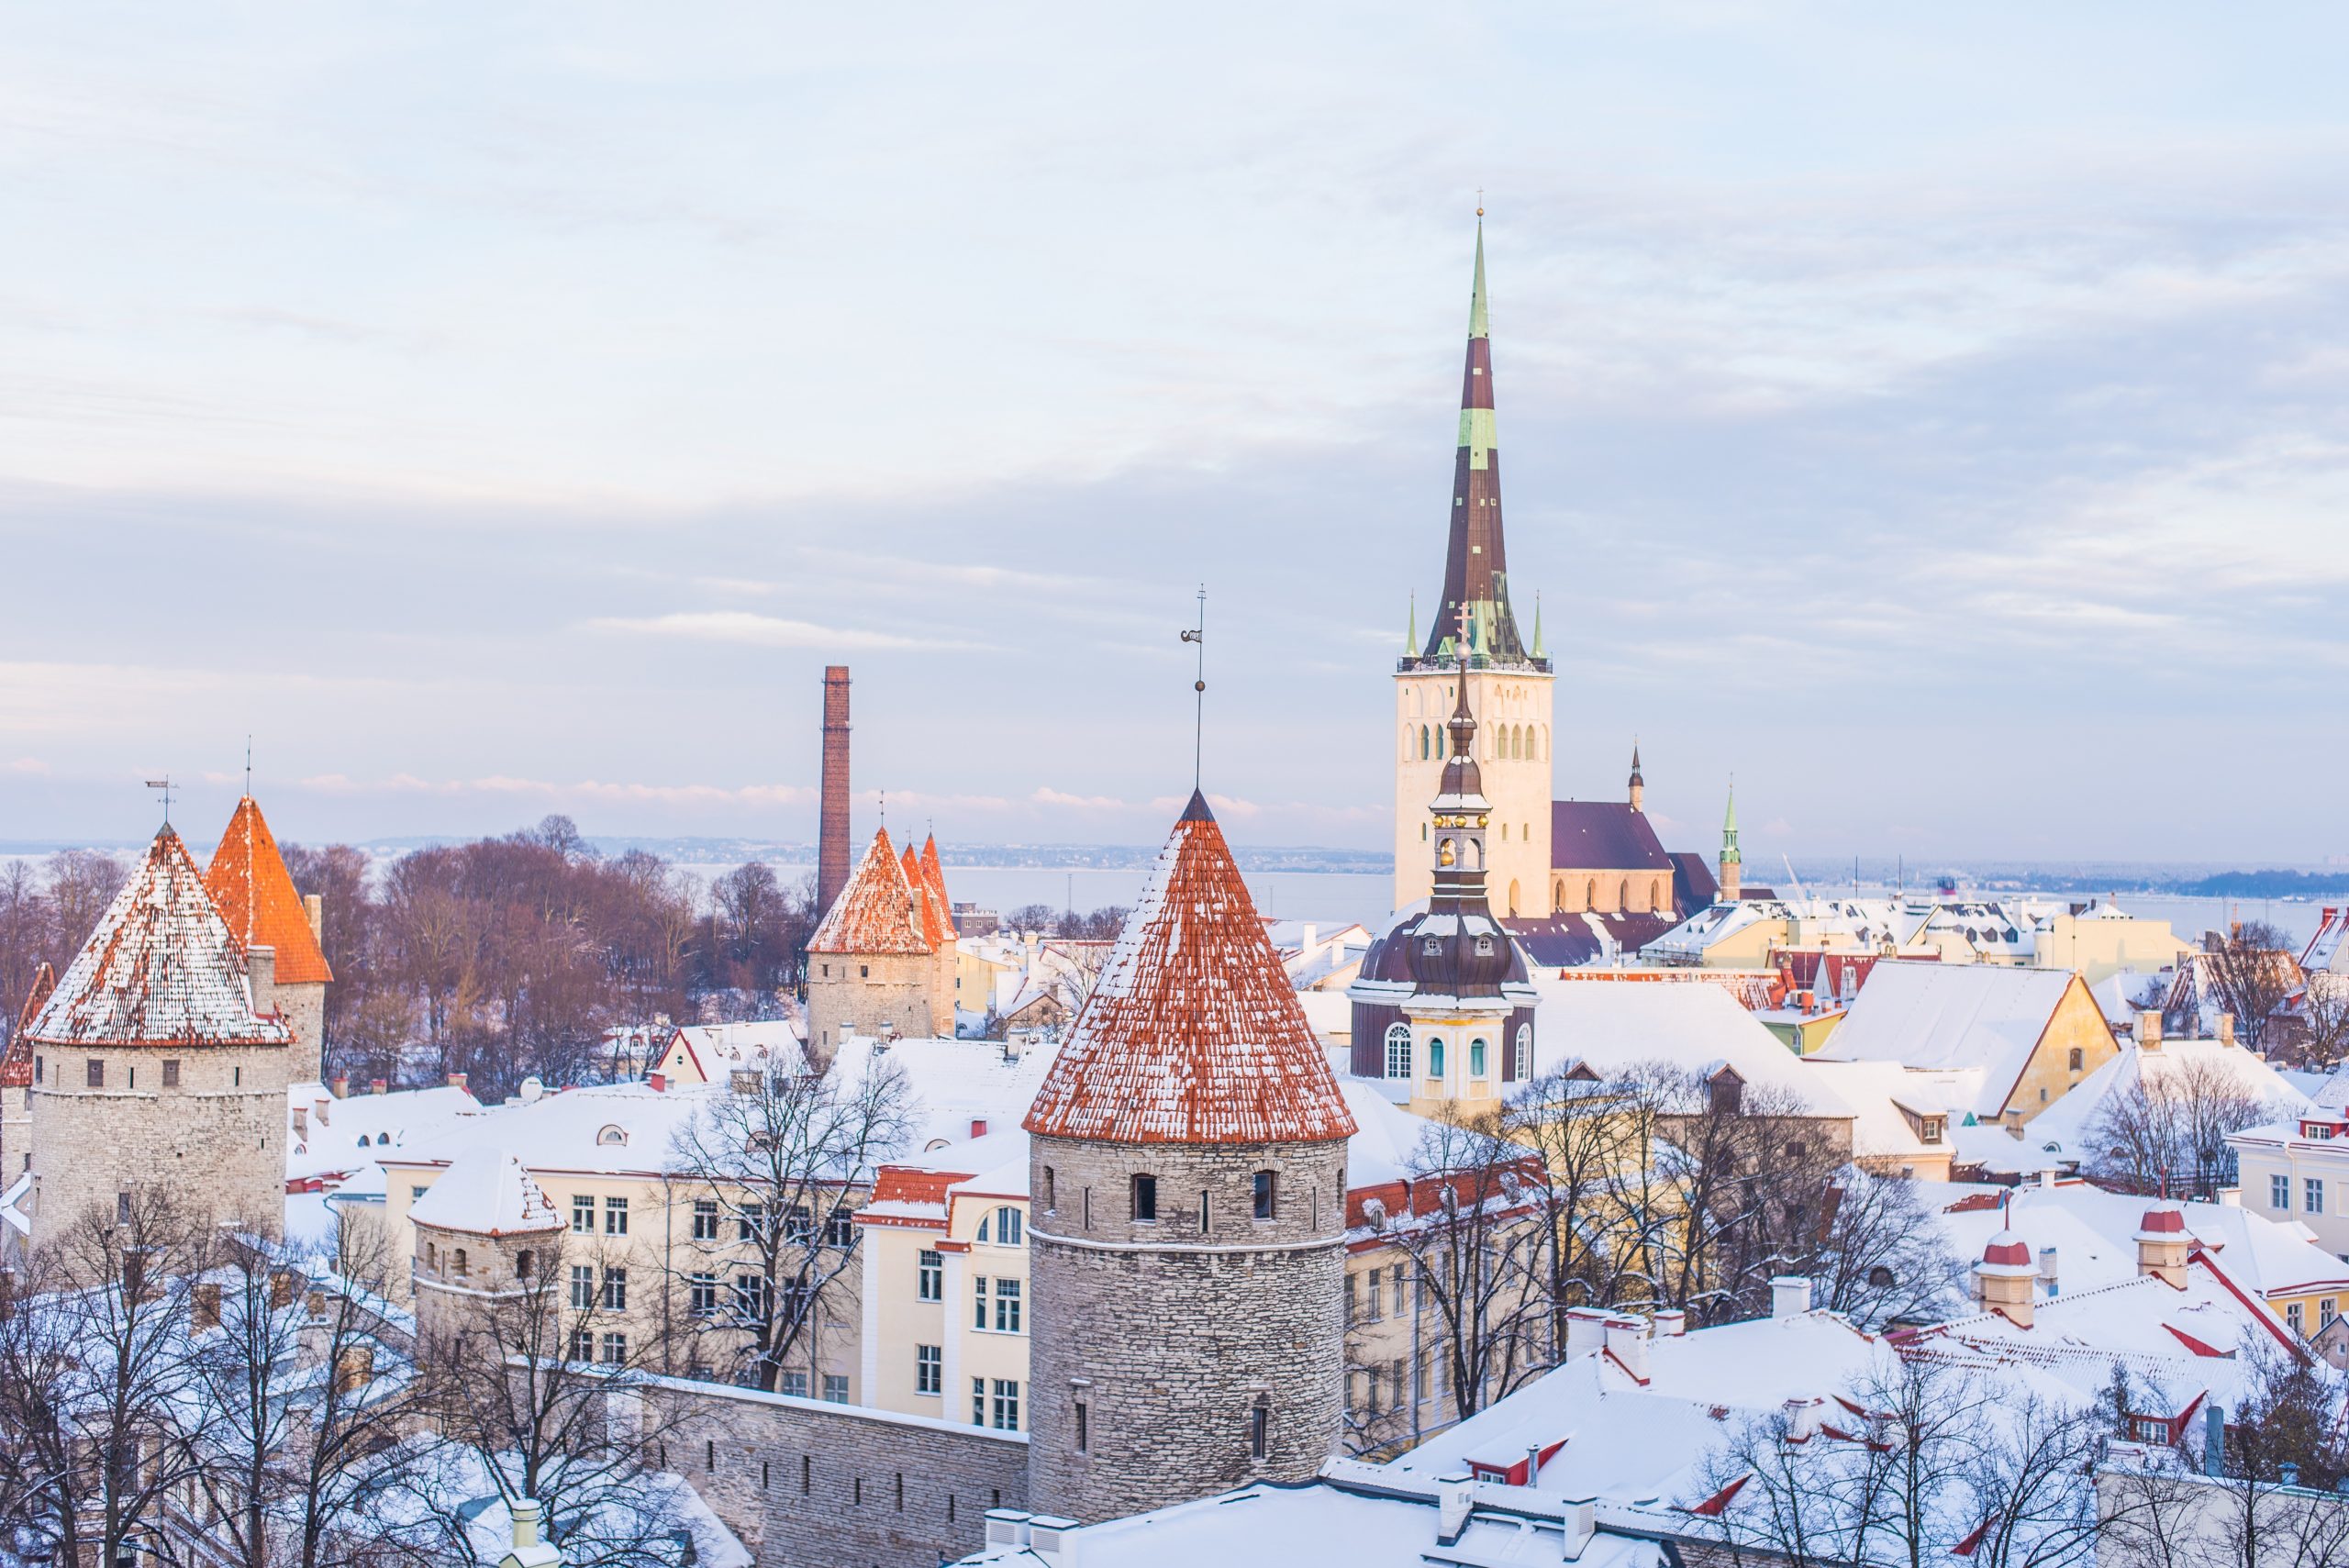 The rooftops of Tallinn, Estonia